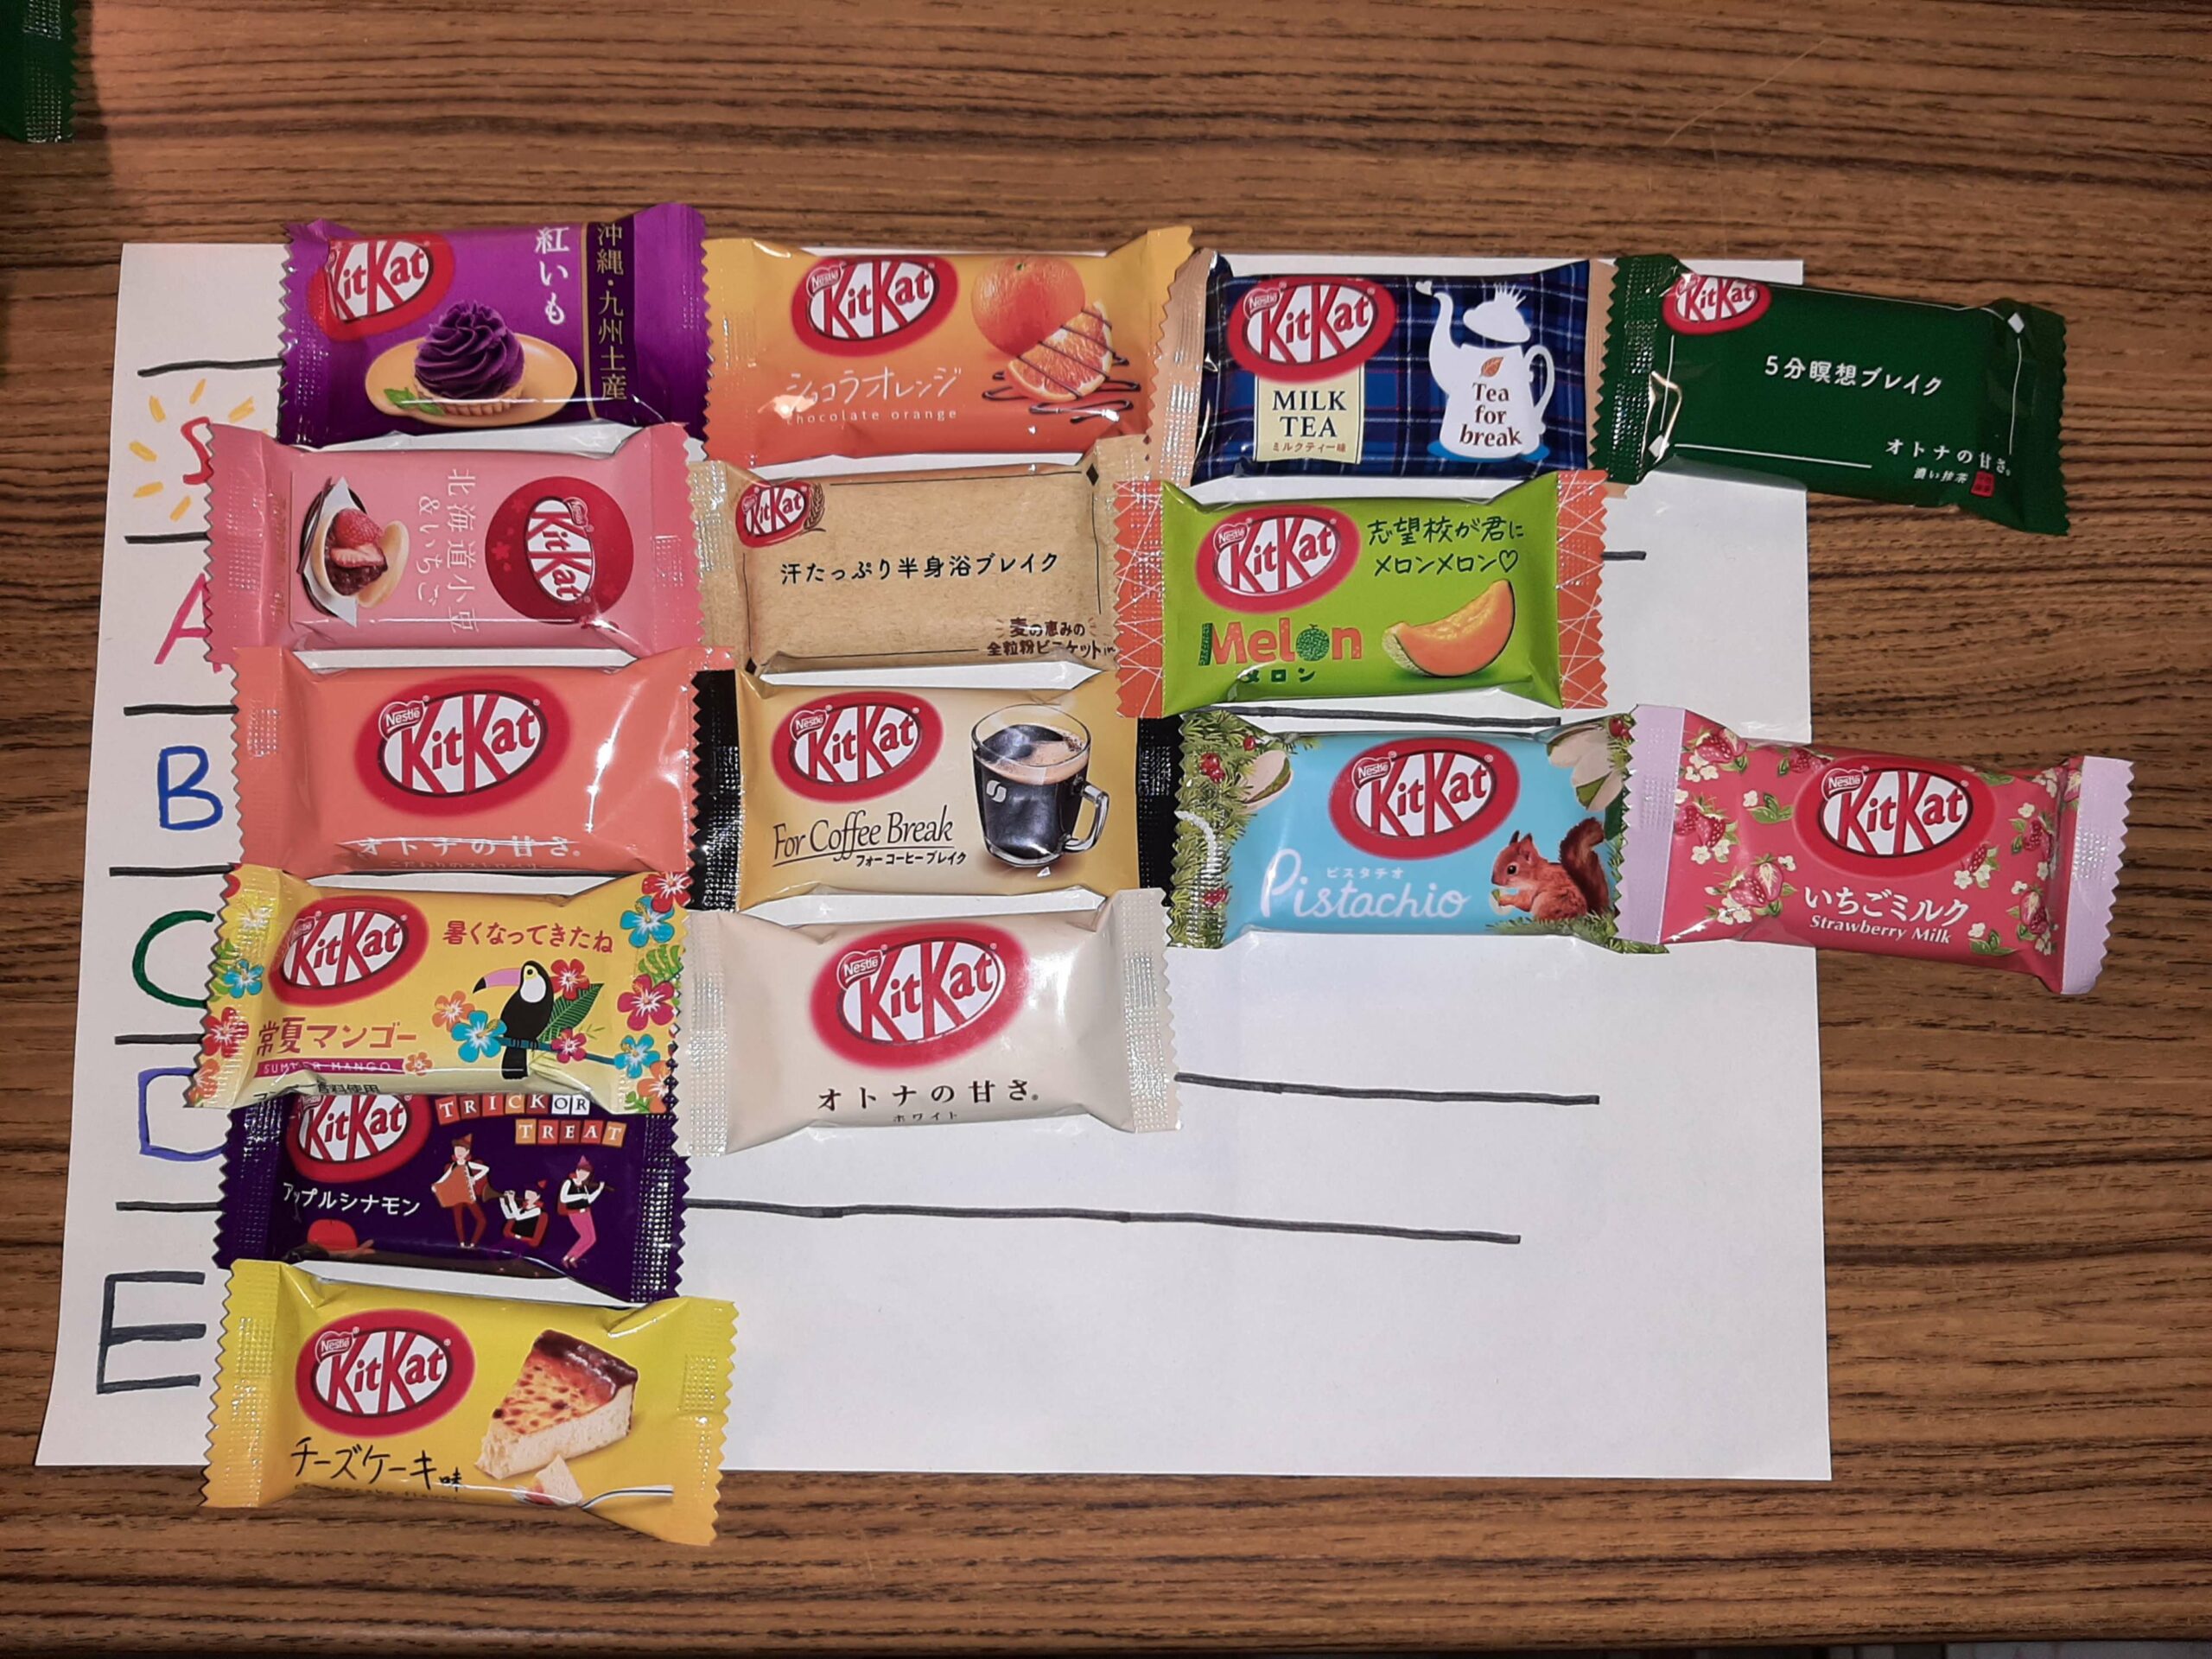 Test de KitKat© japonais